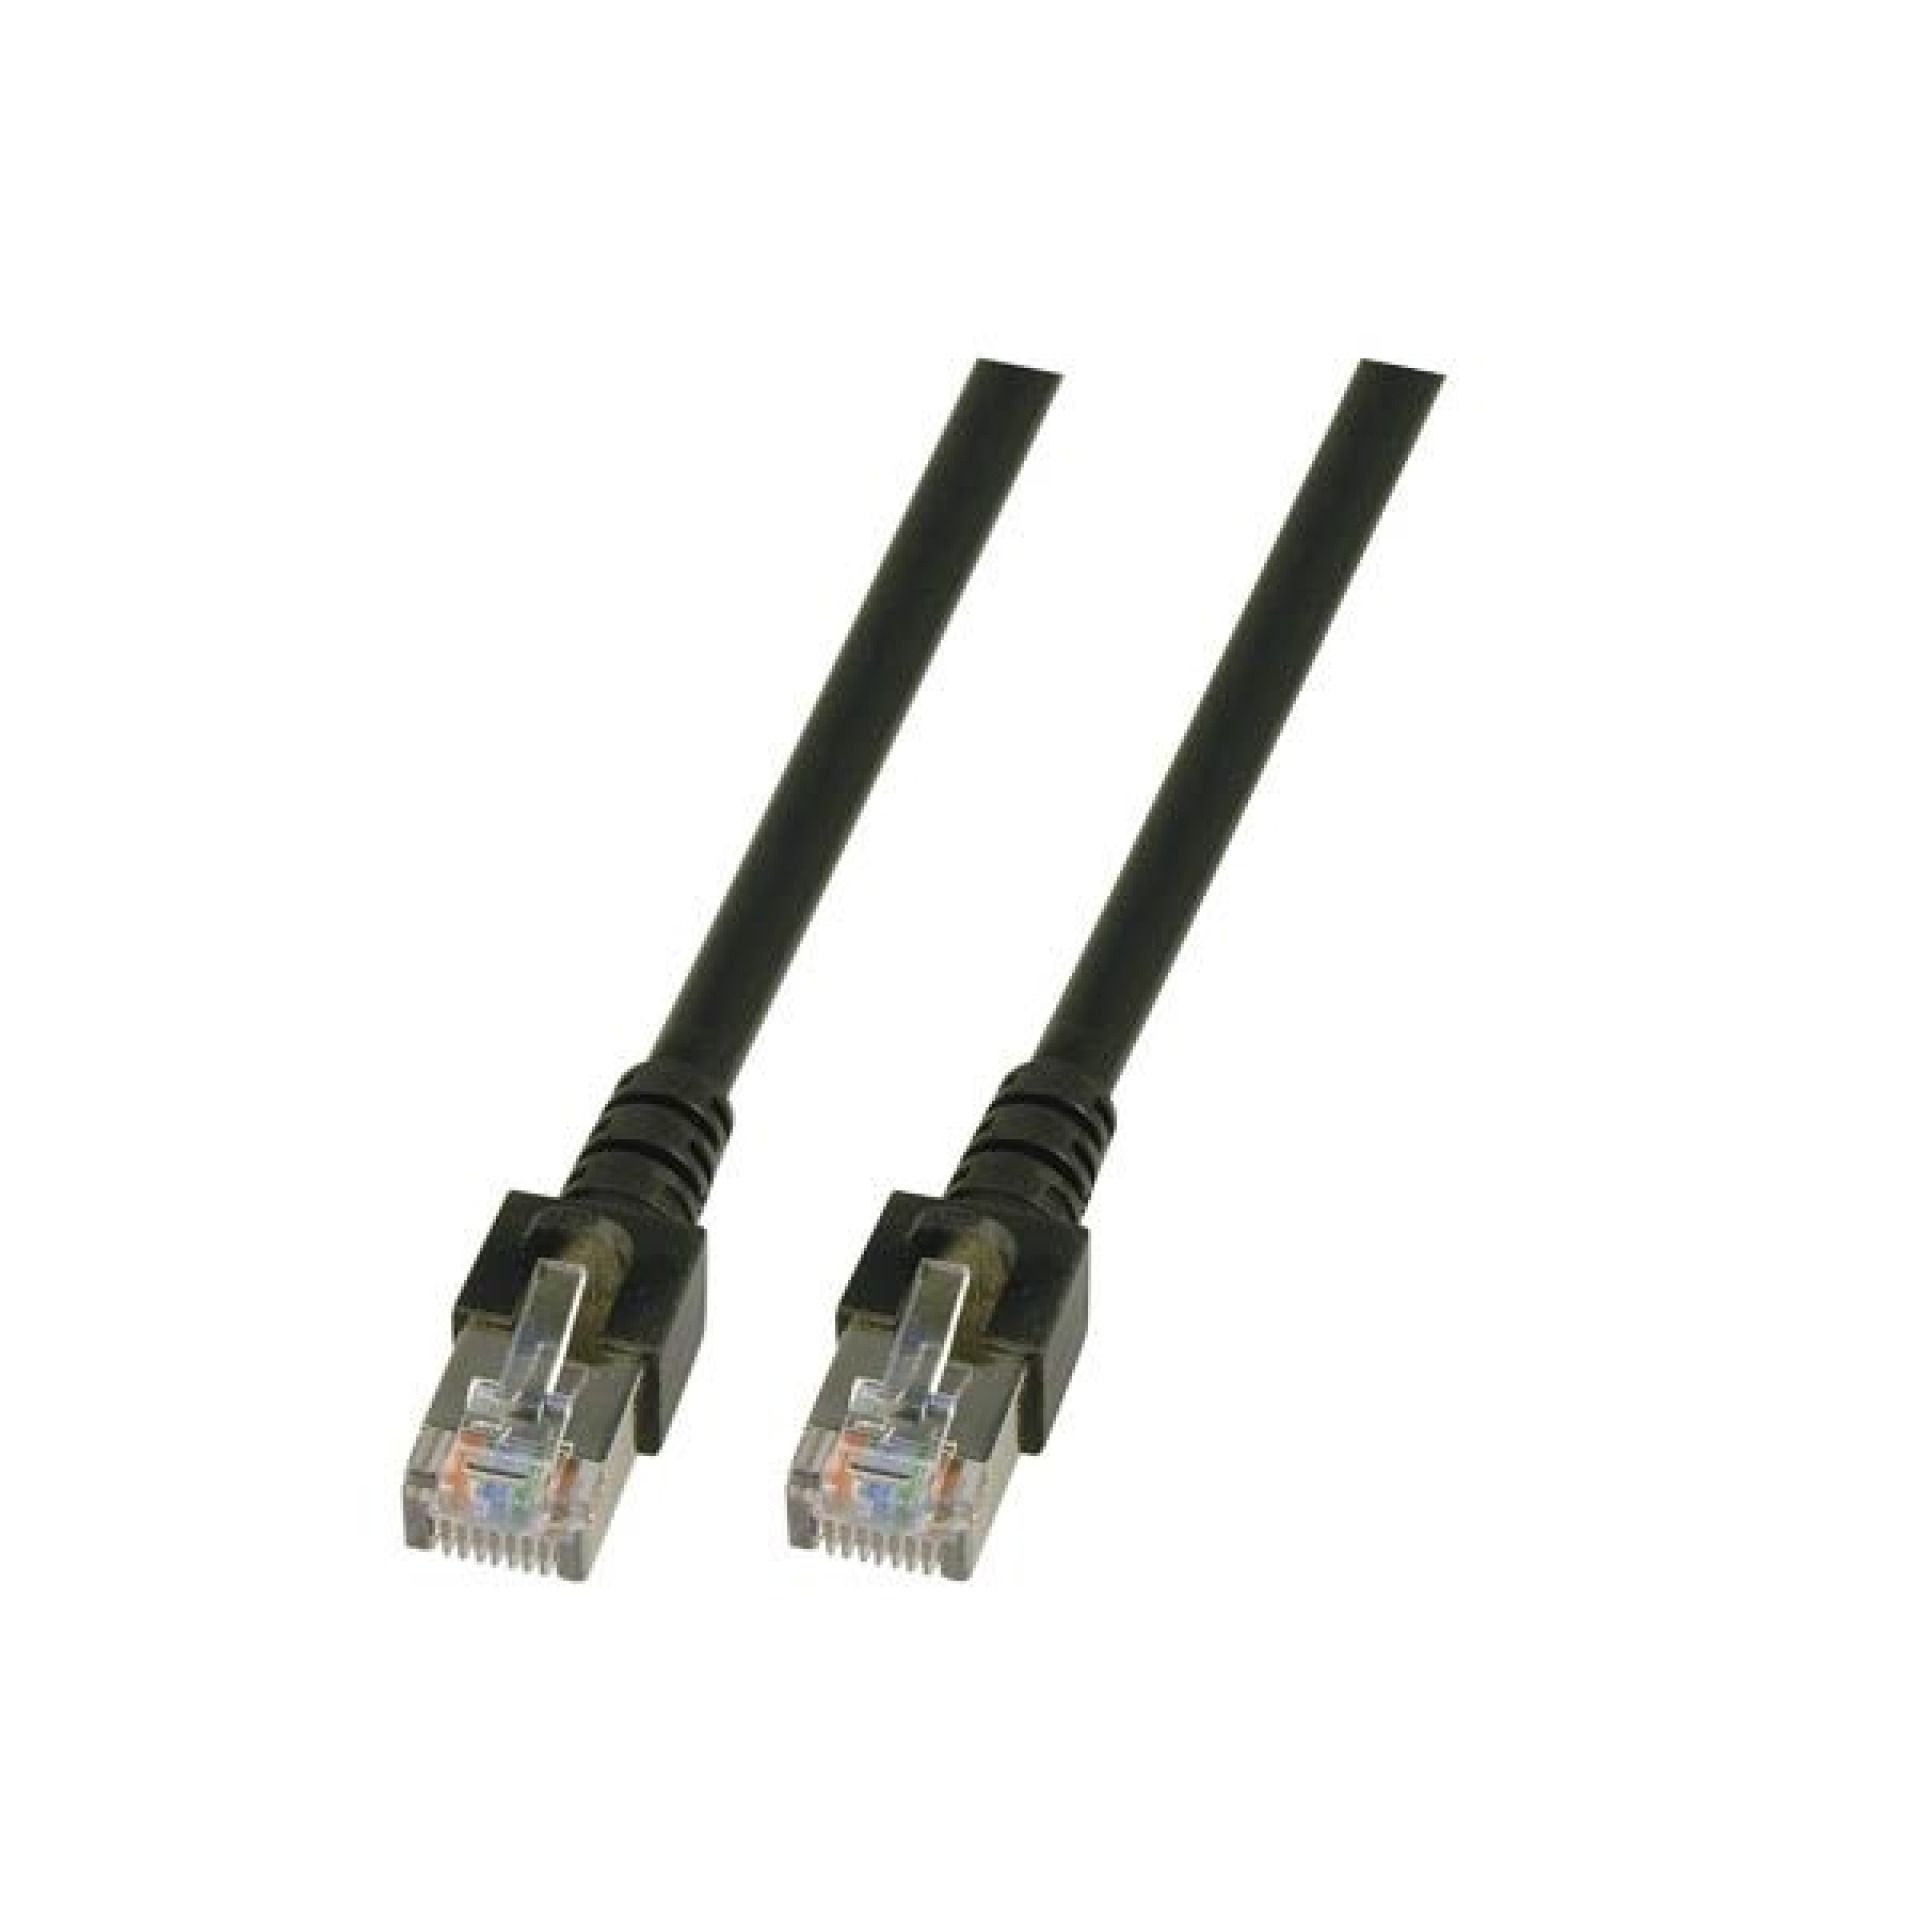 RJ45 Patch cable SF/UTP, Cat.5e, PVC, CCA, 0.5m, black